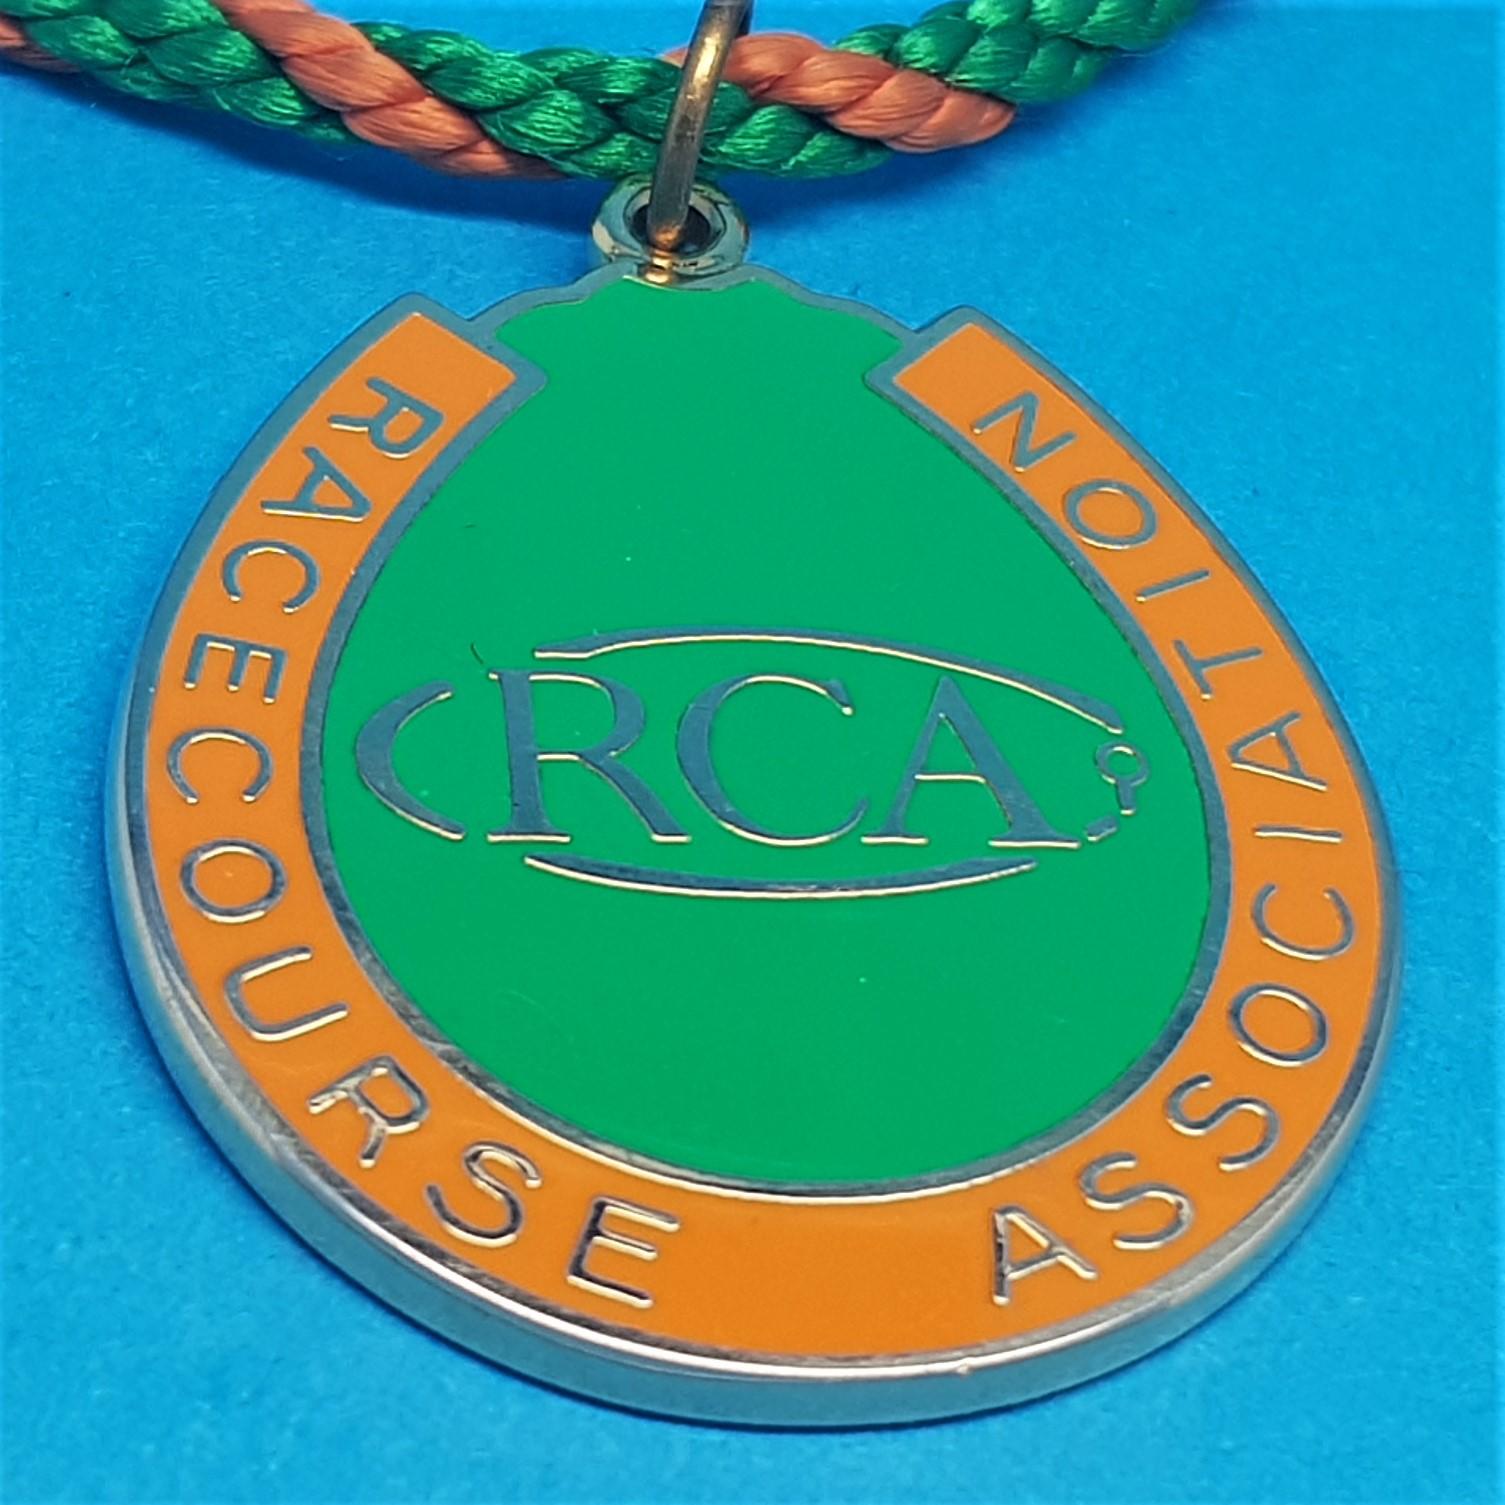 Racecourse Association 2009